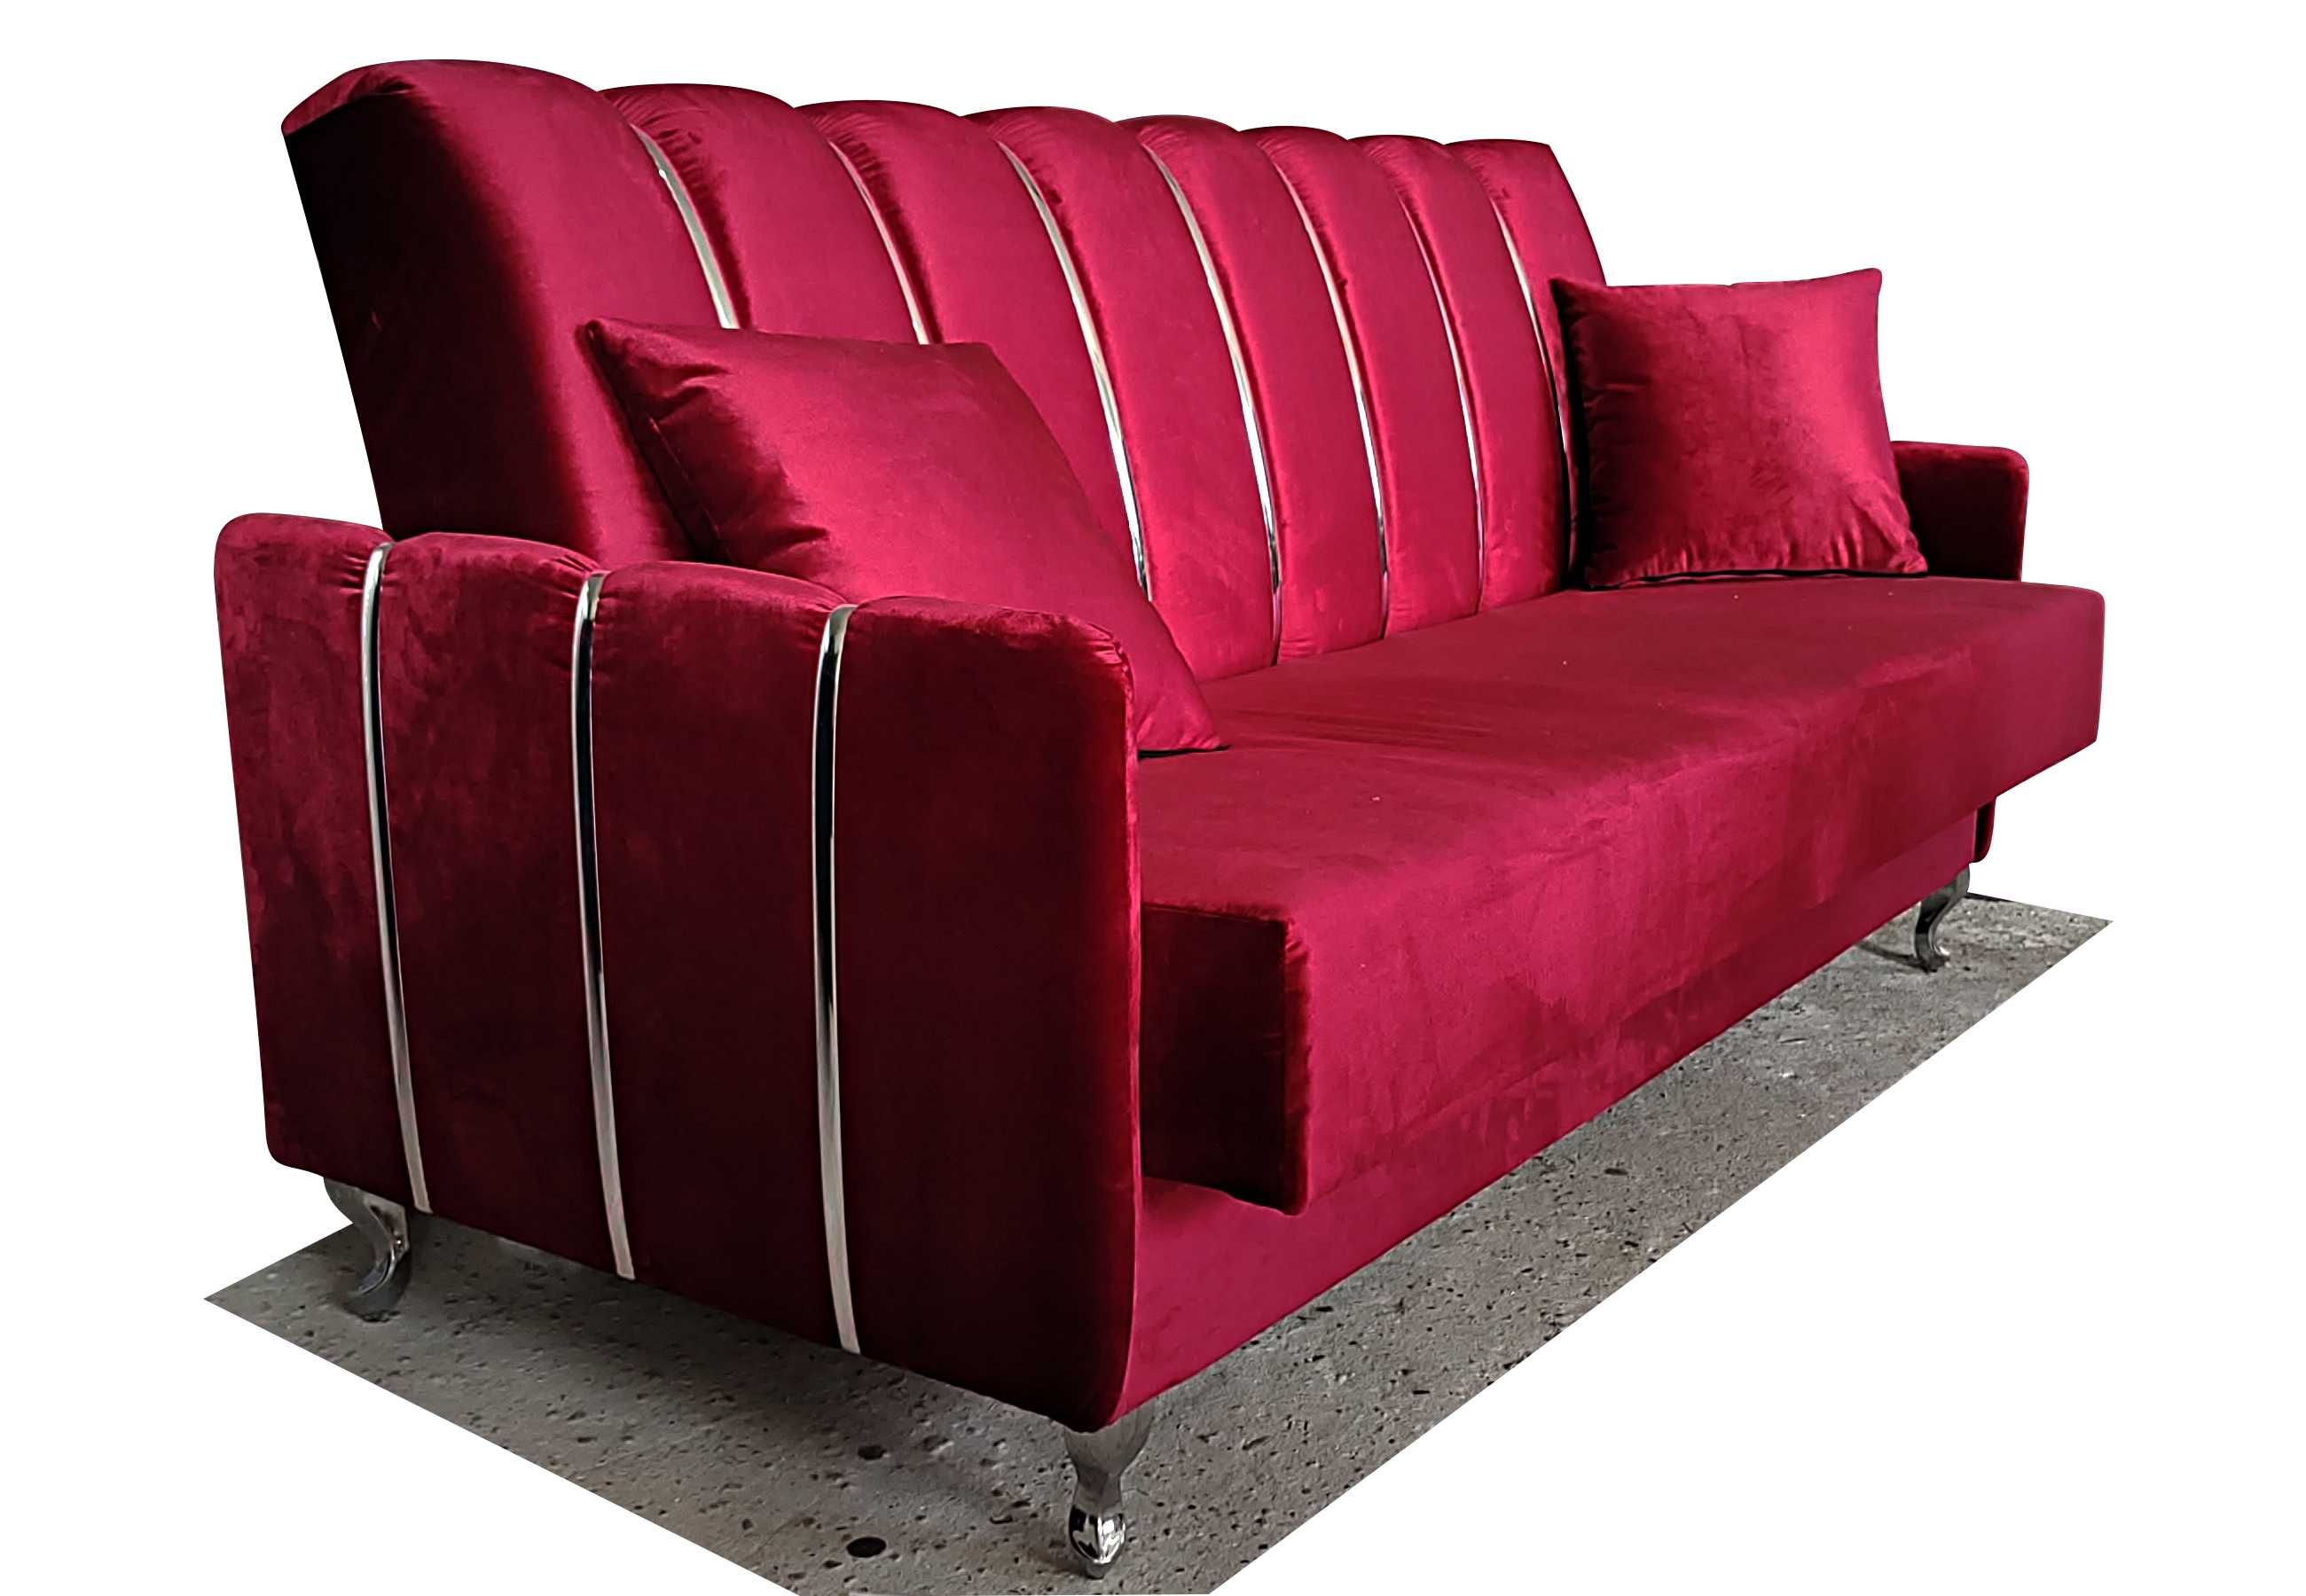 RATY sofa 3 rozkładana kanapa z bokami wersalka z pojemnikiem doSPANIA